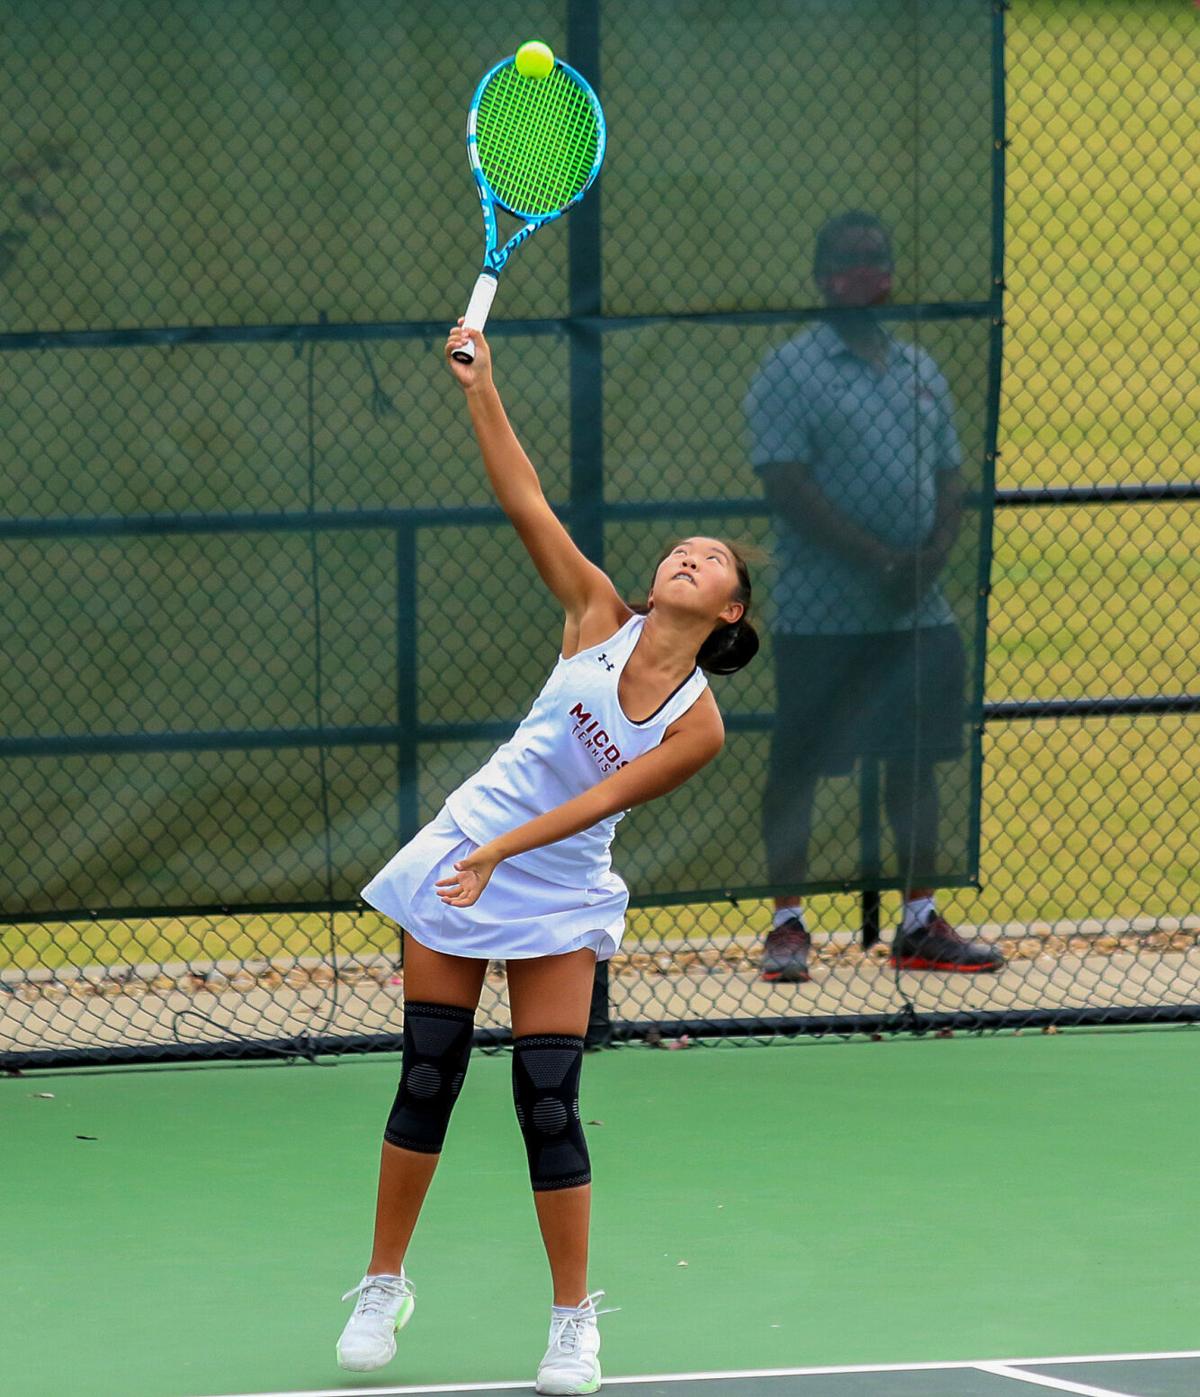 Rachel Li Girls Tennis